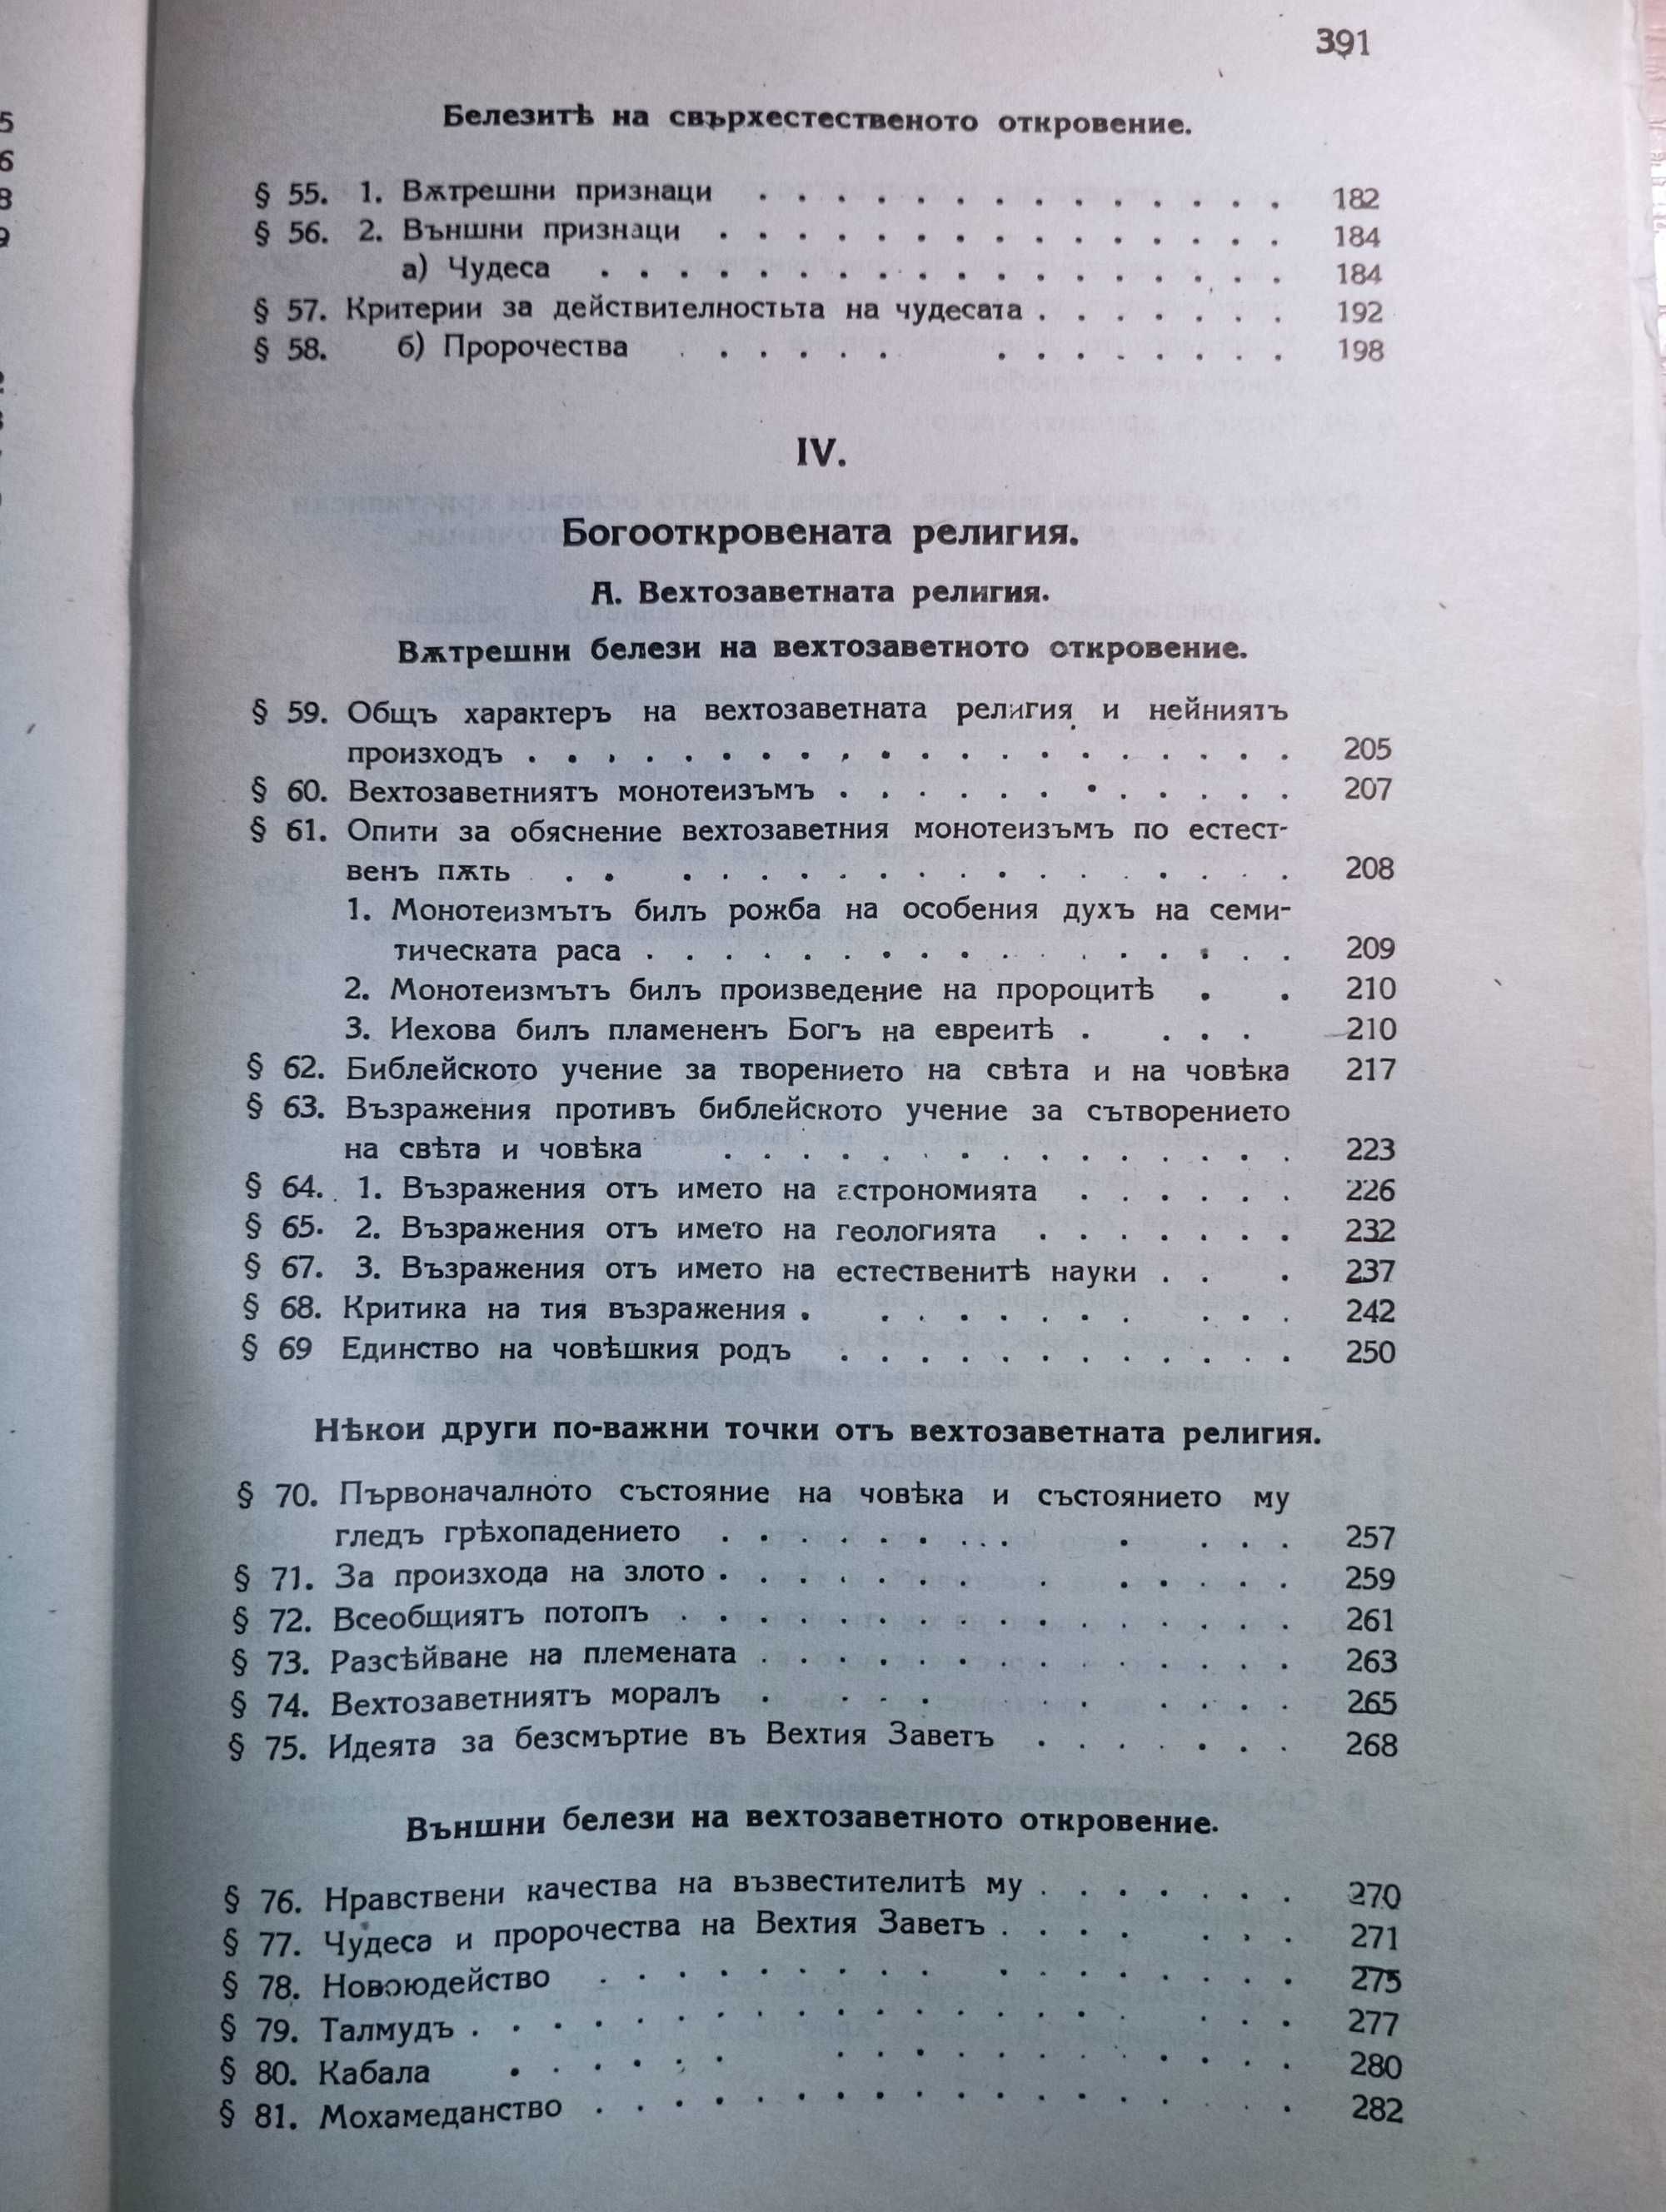 книга Апологетика и Кирилометодиевска библиография за 1934-1940